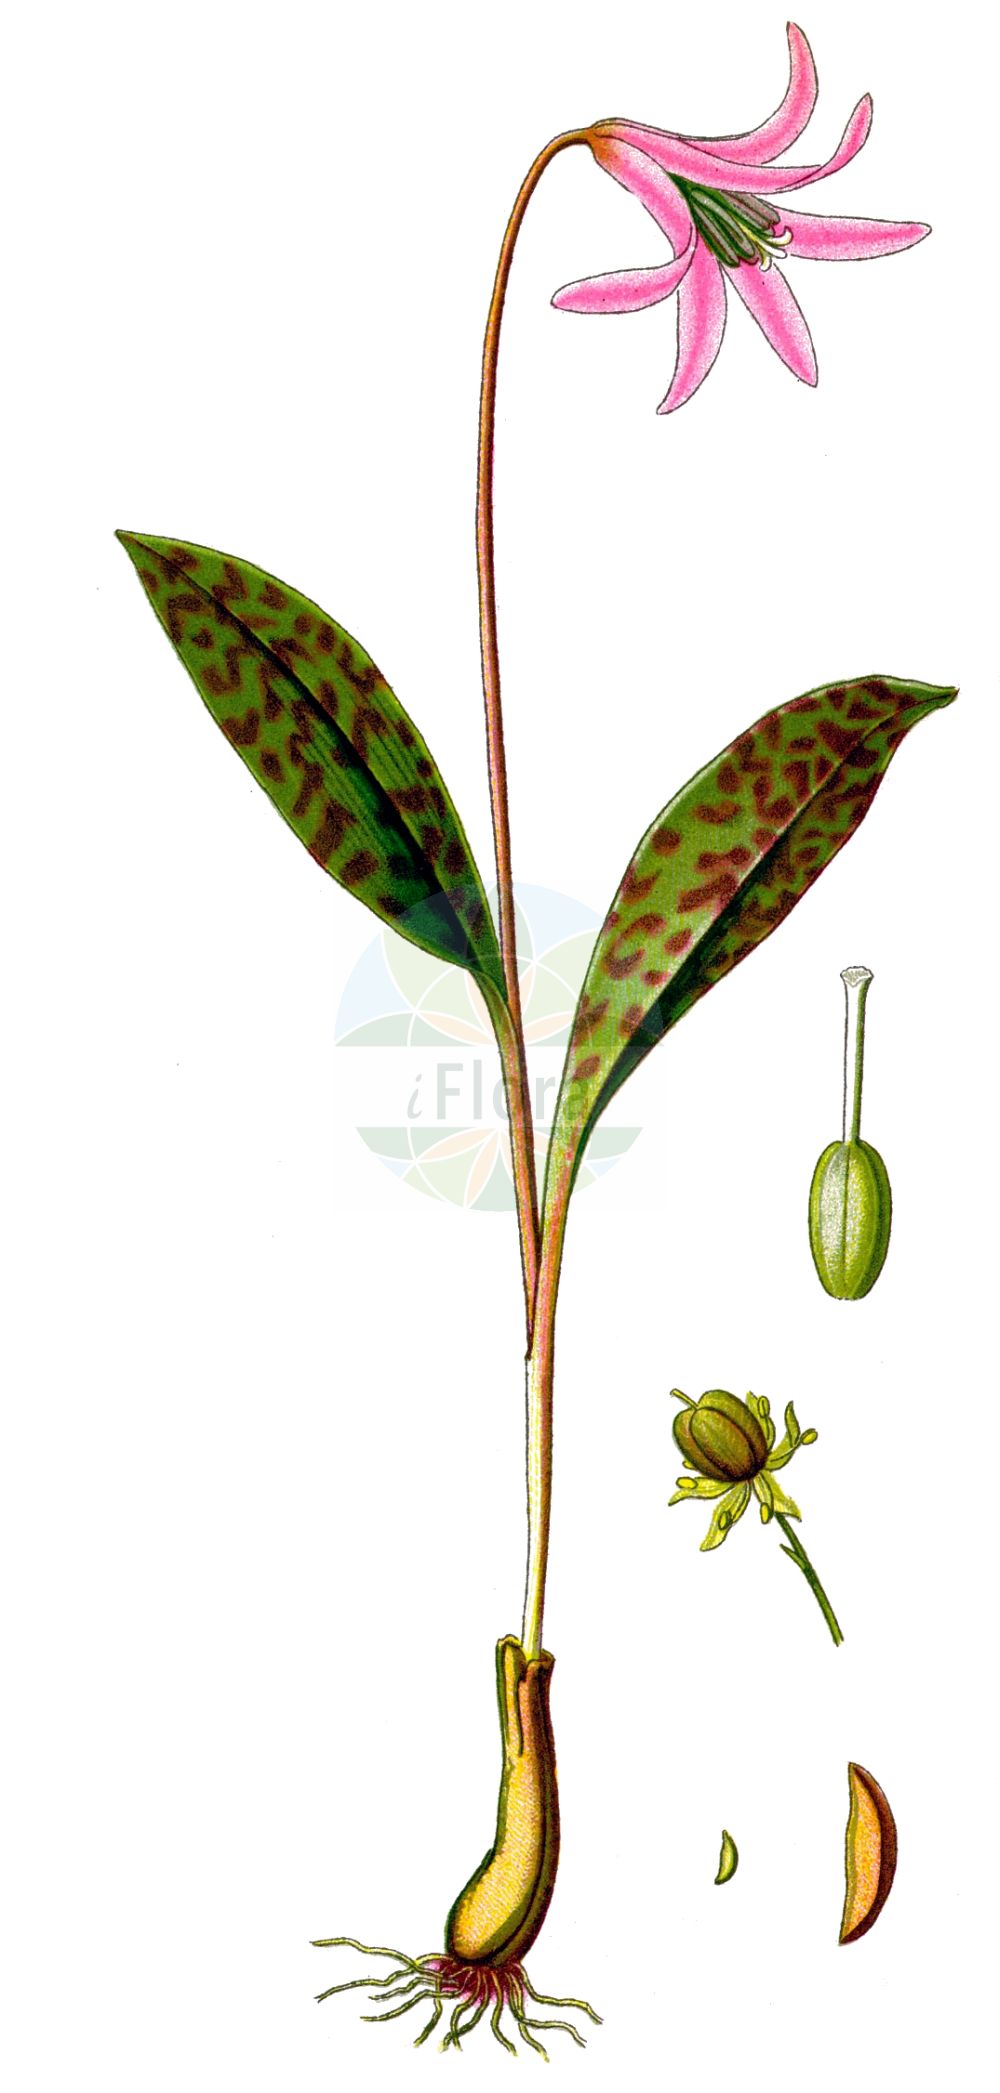 Historische Abbildung von Erythronium dens-canis. Das Bild zeigt Blatt, Bluete, Frucht und Same. ---- Historical Drawing of Erythronium dens-canis. The image is showing leaf, flower, fruit and seed.(Erythronium dens-canis,Erythronium bifidum,Erythronium bulbosum,Erythronium caninum,Erythronium dens-canis,Erythronium latifolium,Erythronium longifolium,Erythronium maculatum,Erythronium maculosum,Erythronium obtusiflorum,Erythronium ovatifolium,Erythronium vernale,Erythronium,Liliaceae,Liliengewächse,Lily family,Blatt,Bluete,Frucht,Same,leaf,flower,fruit,seed,Thomé (1885))